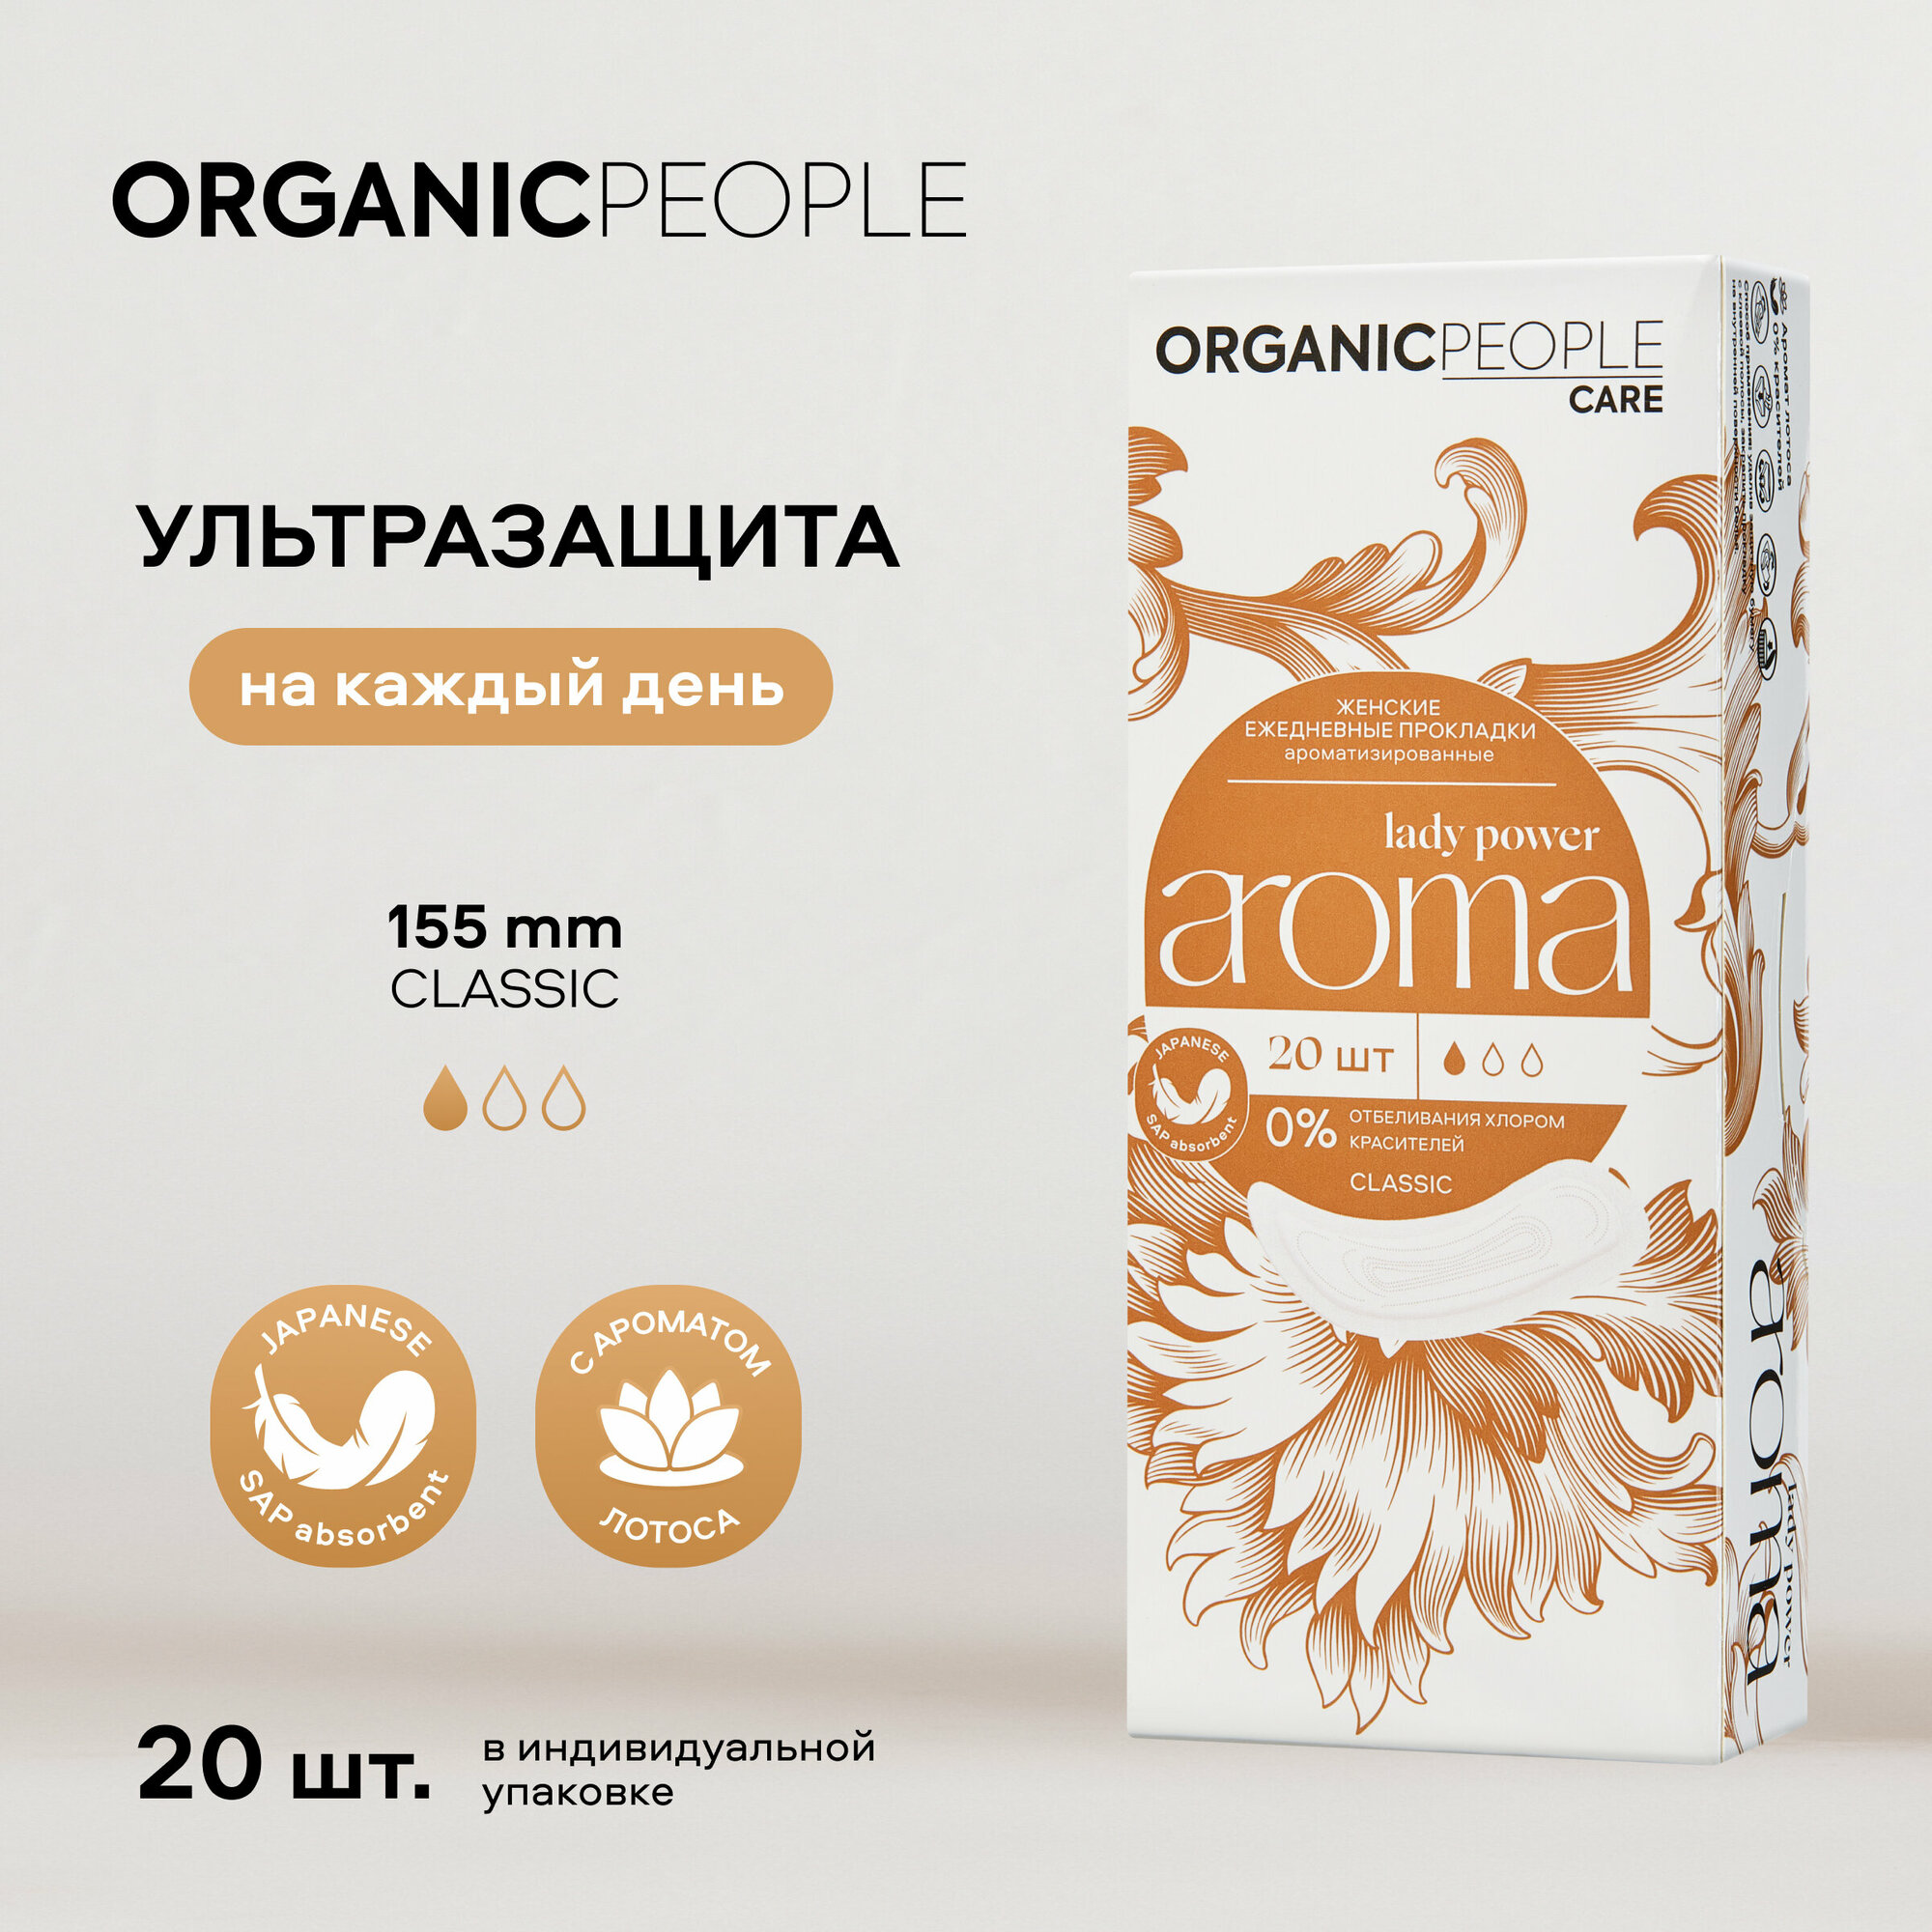 Женские ежедневные прокладки ароматизированные ORGANIC PEOPLE Lady Power "AROMA. Classic", 20 шт